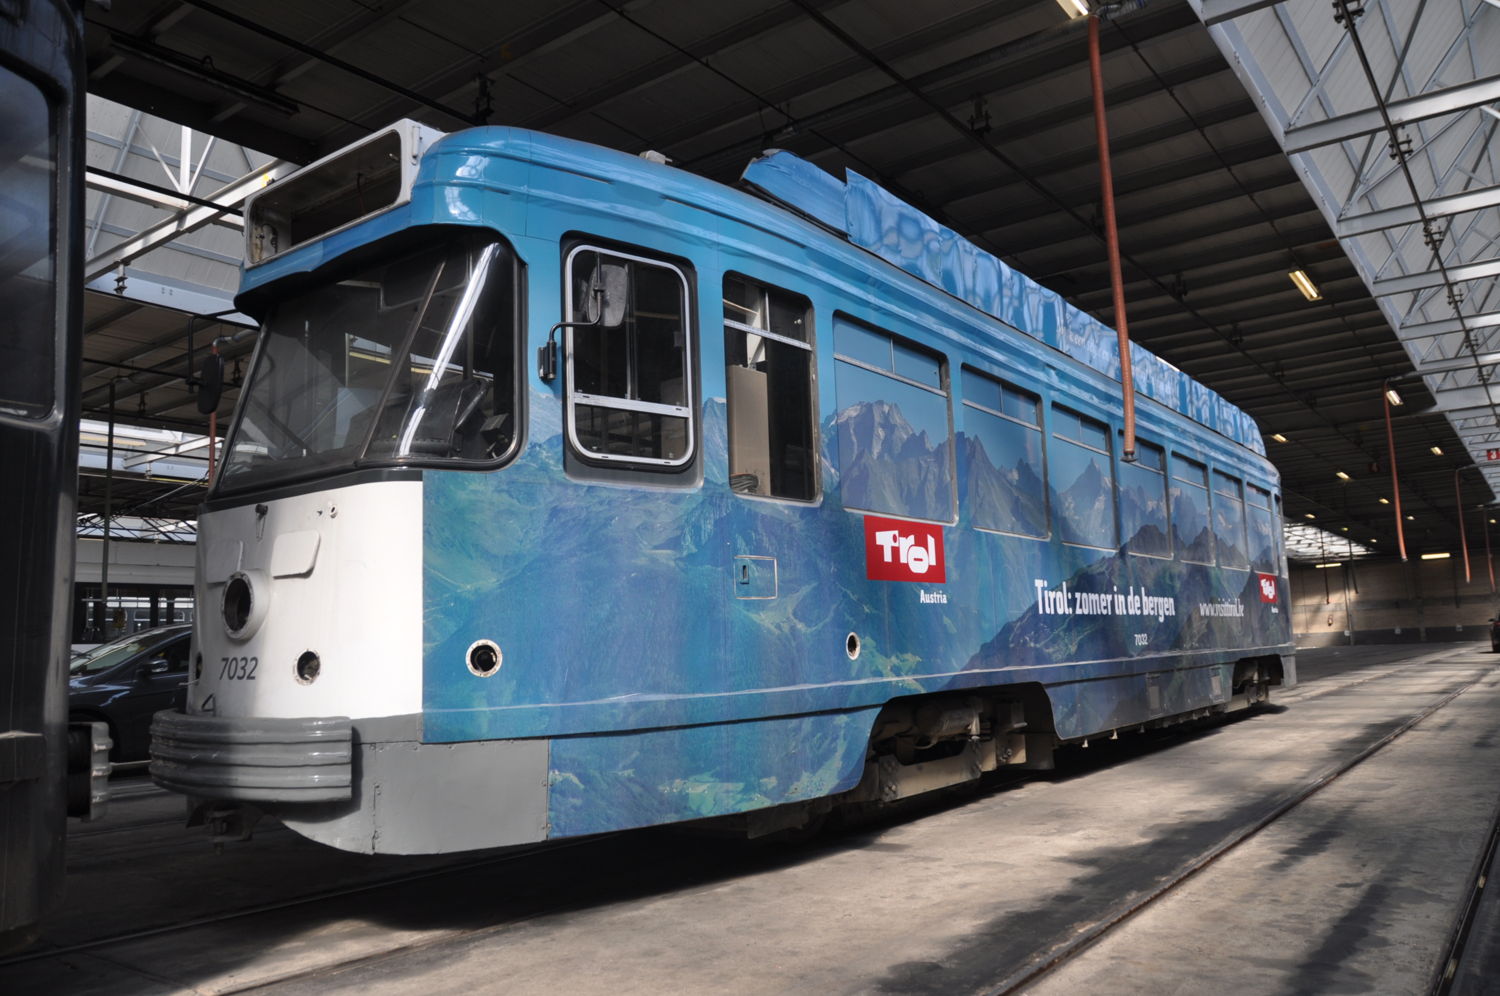 PCC-tram met reclame voor Visit Tirol. (foto: De Lijn)